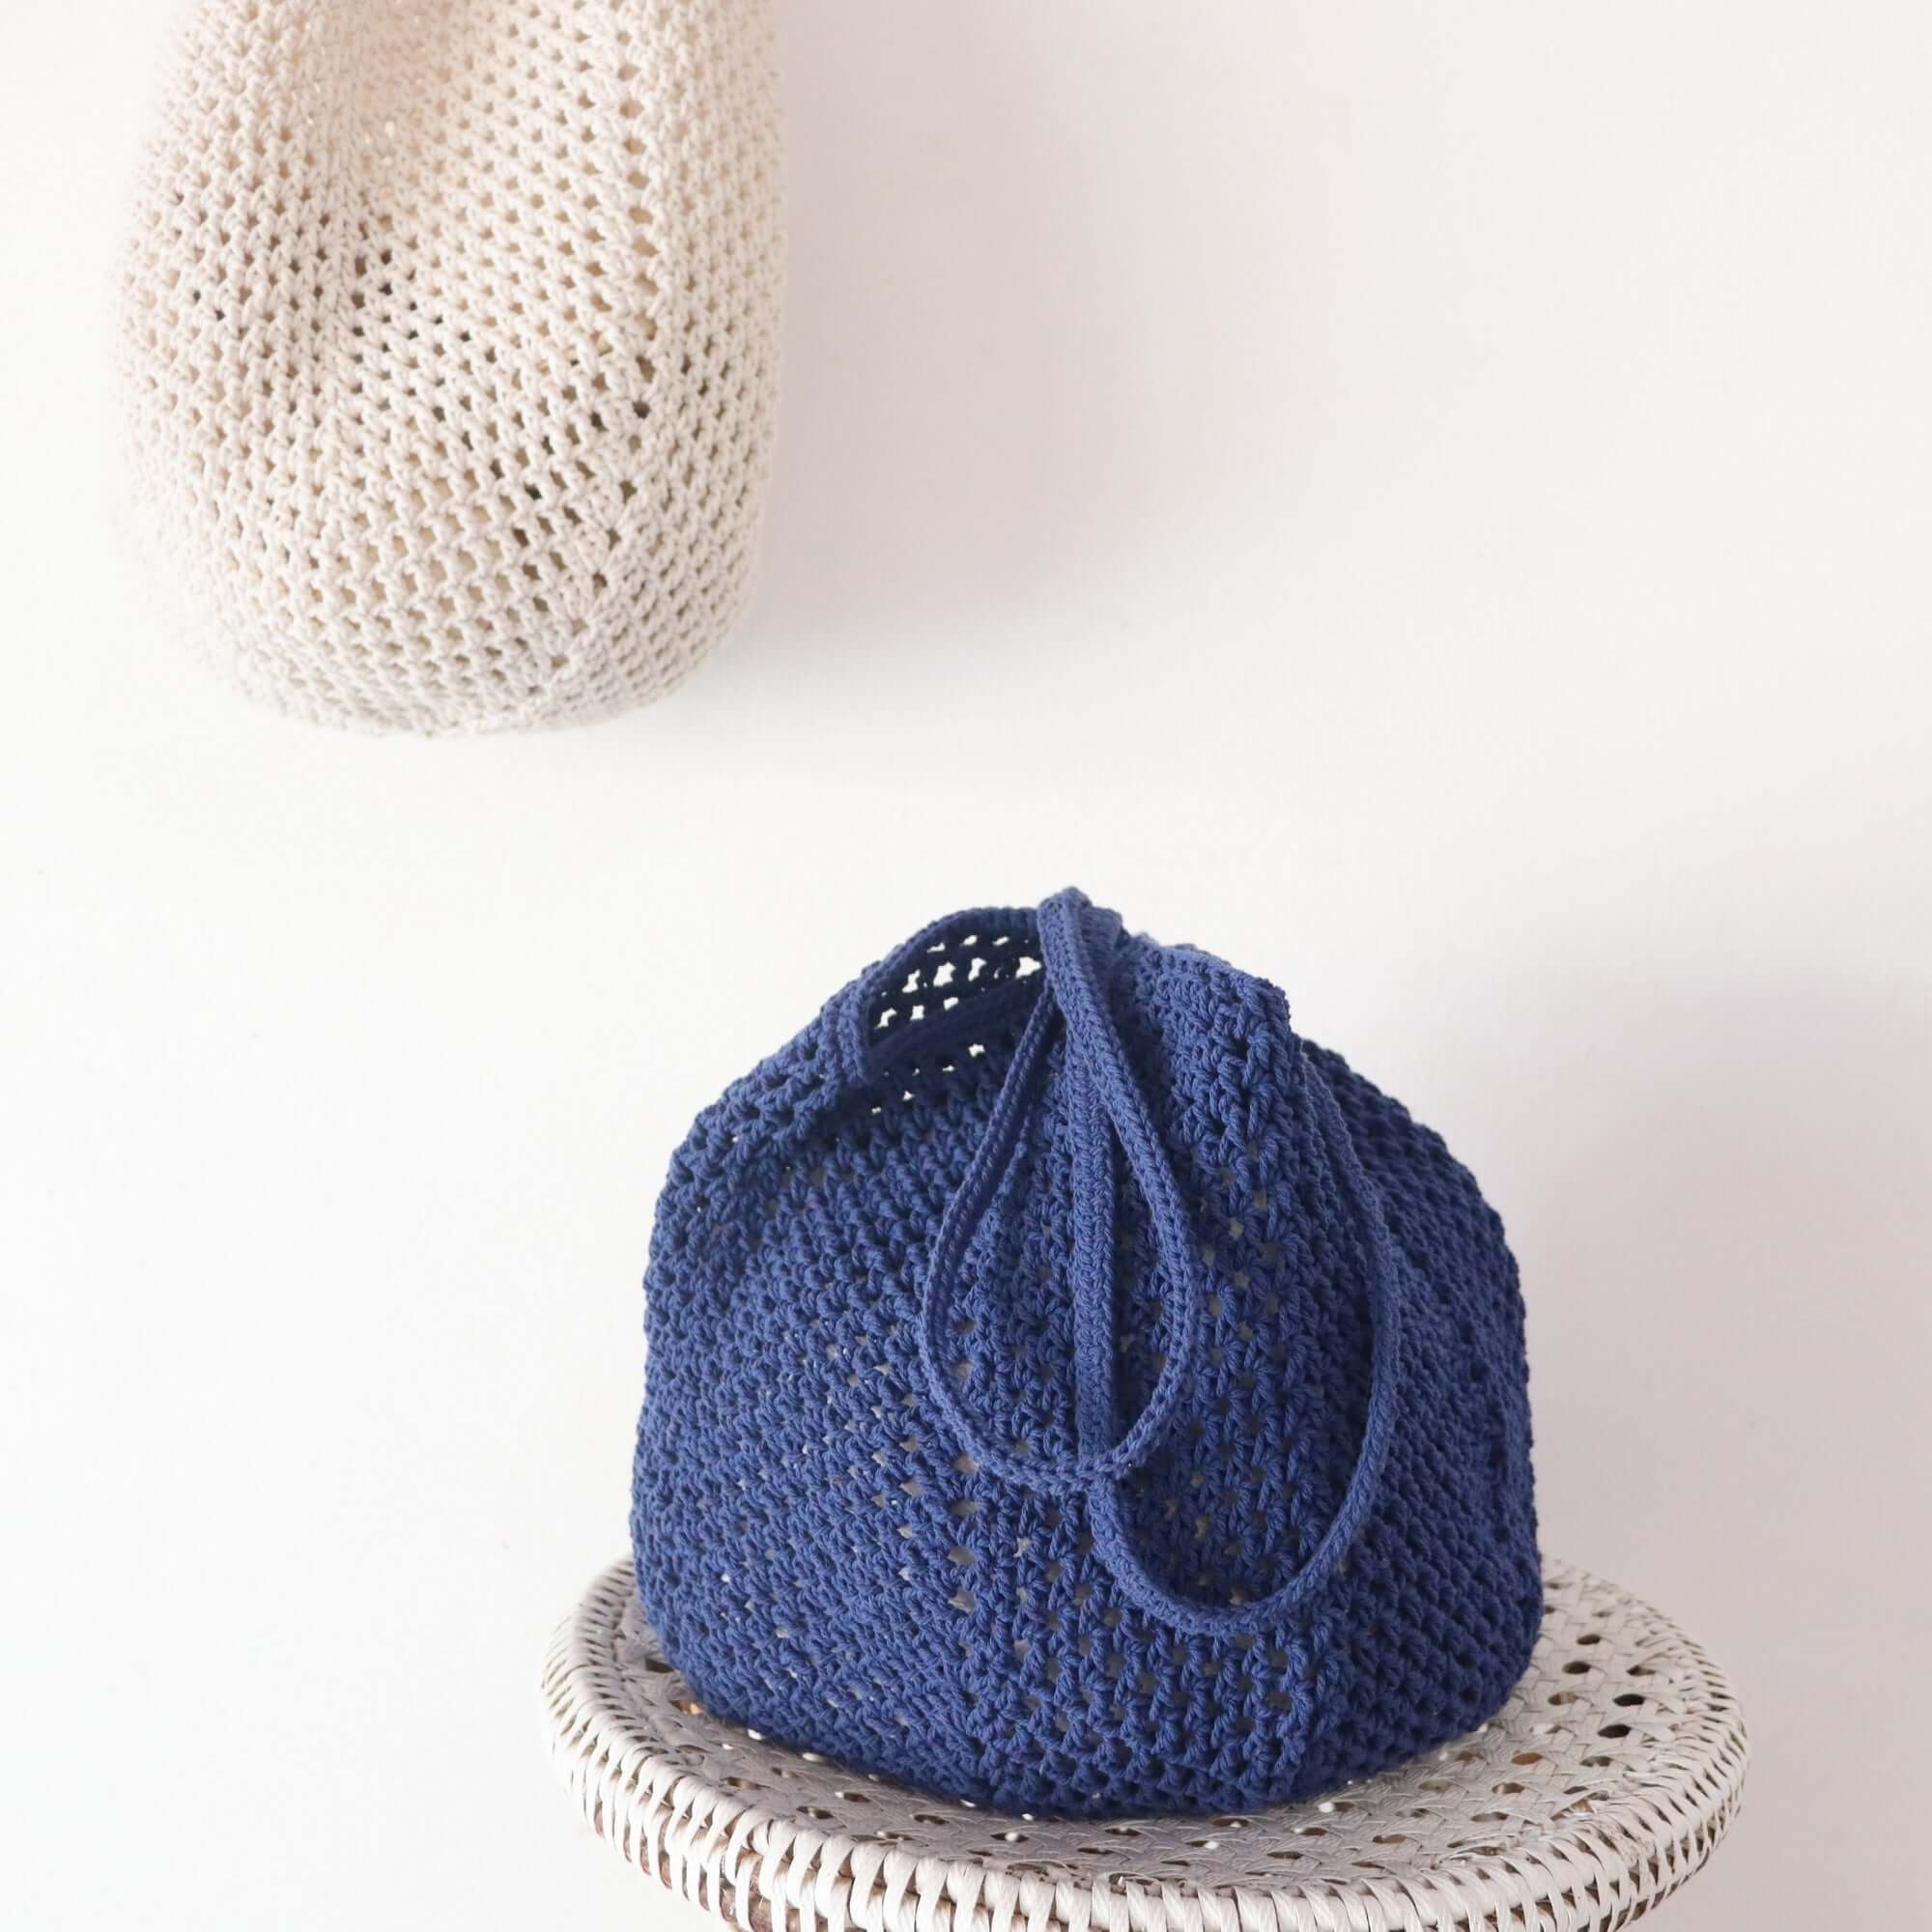 Blue - Crochet Shoulder Bag